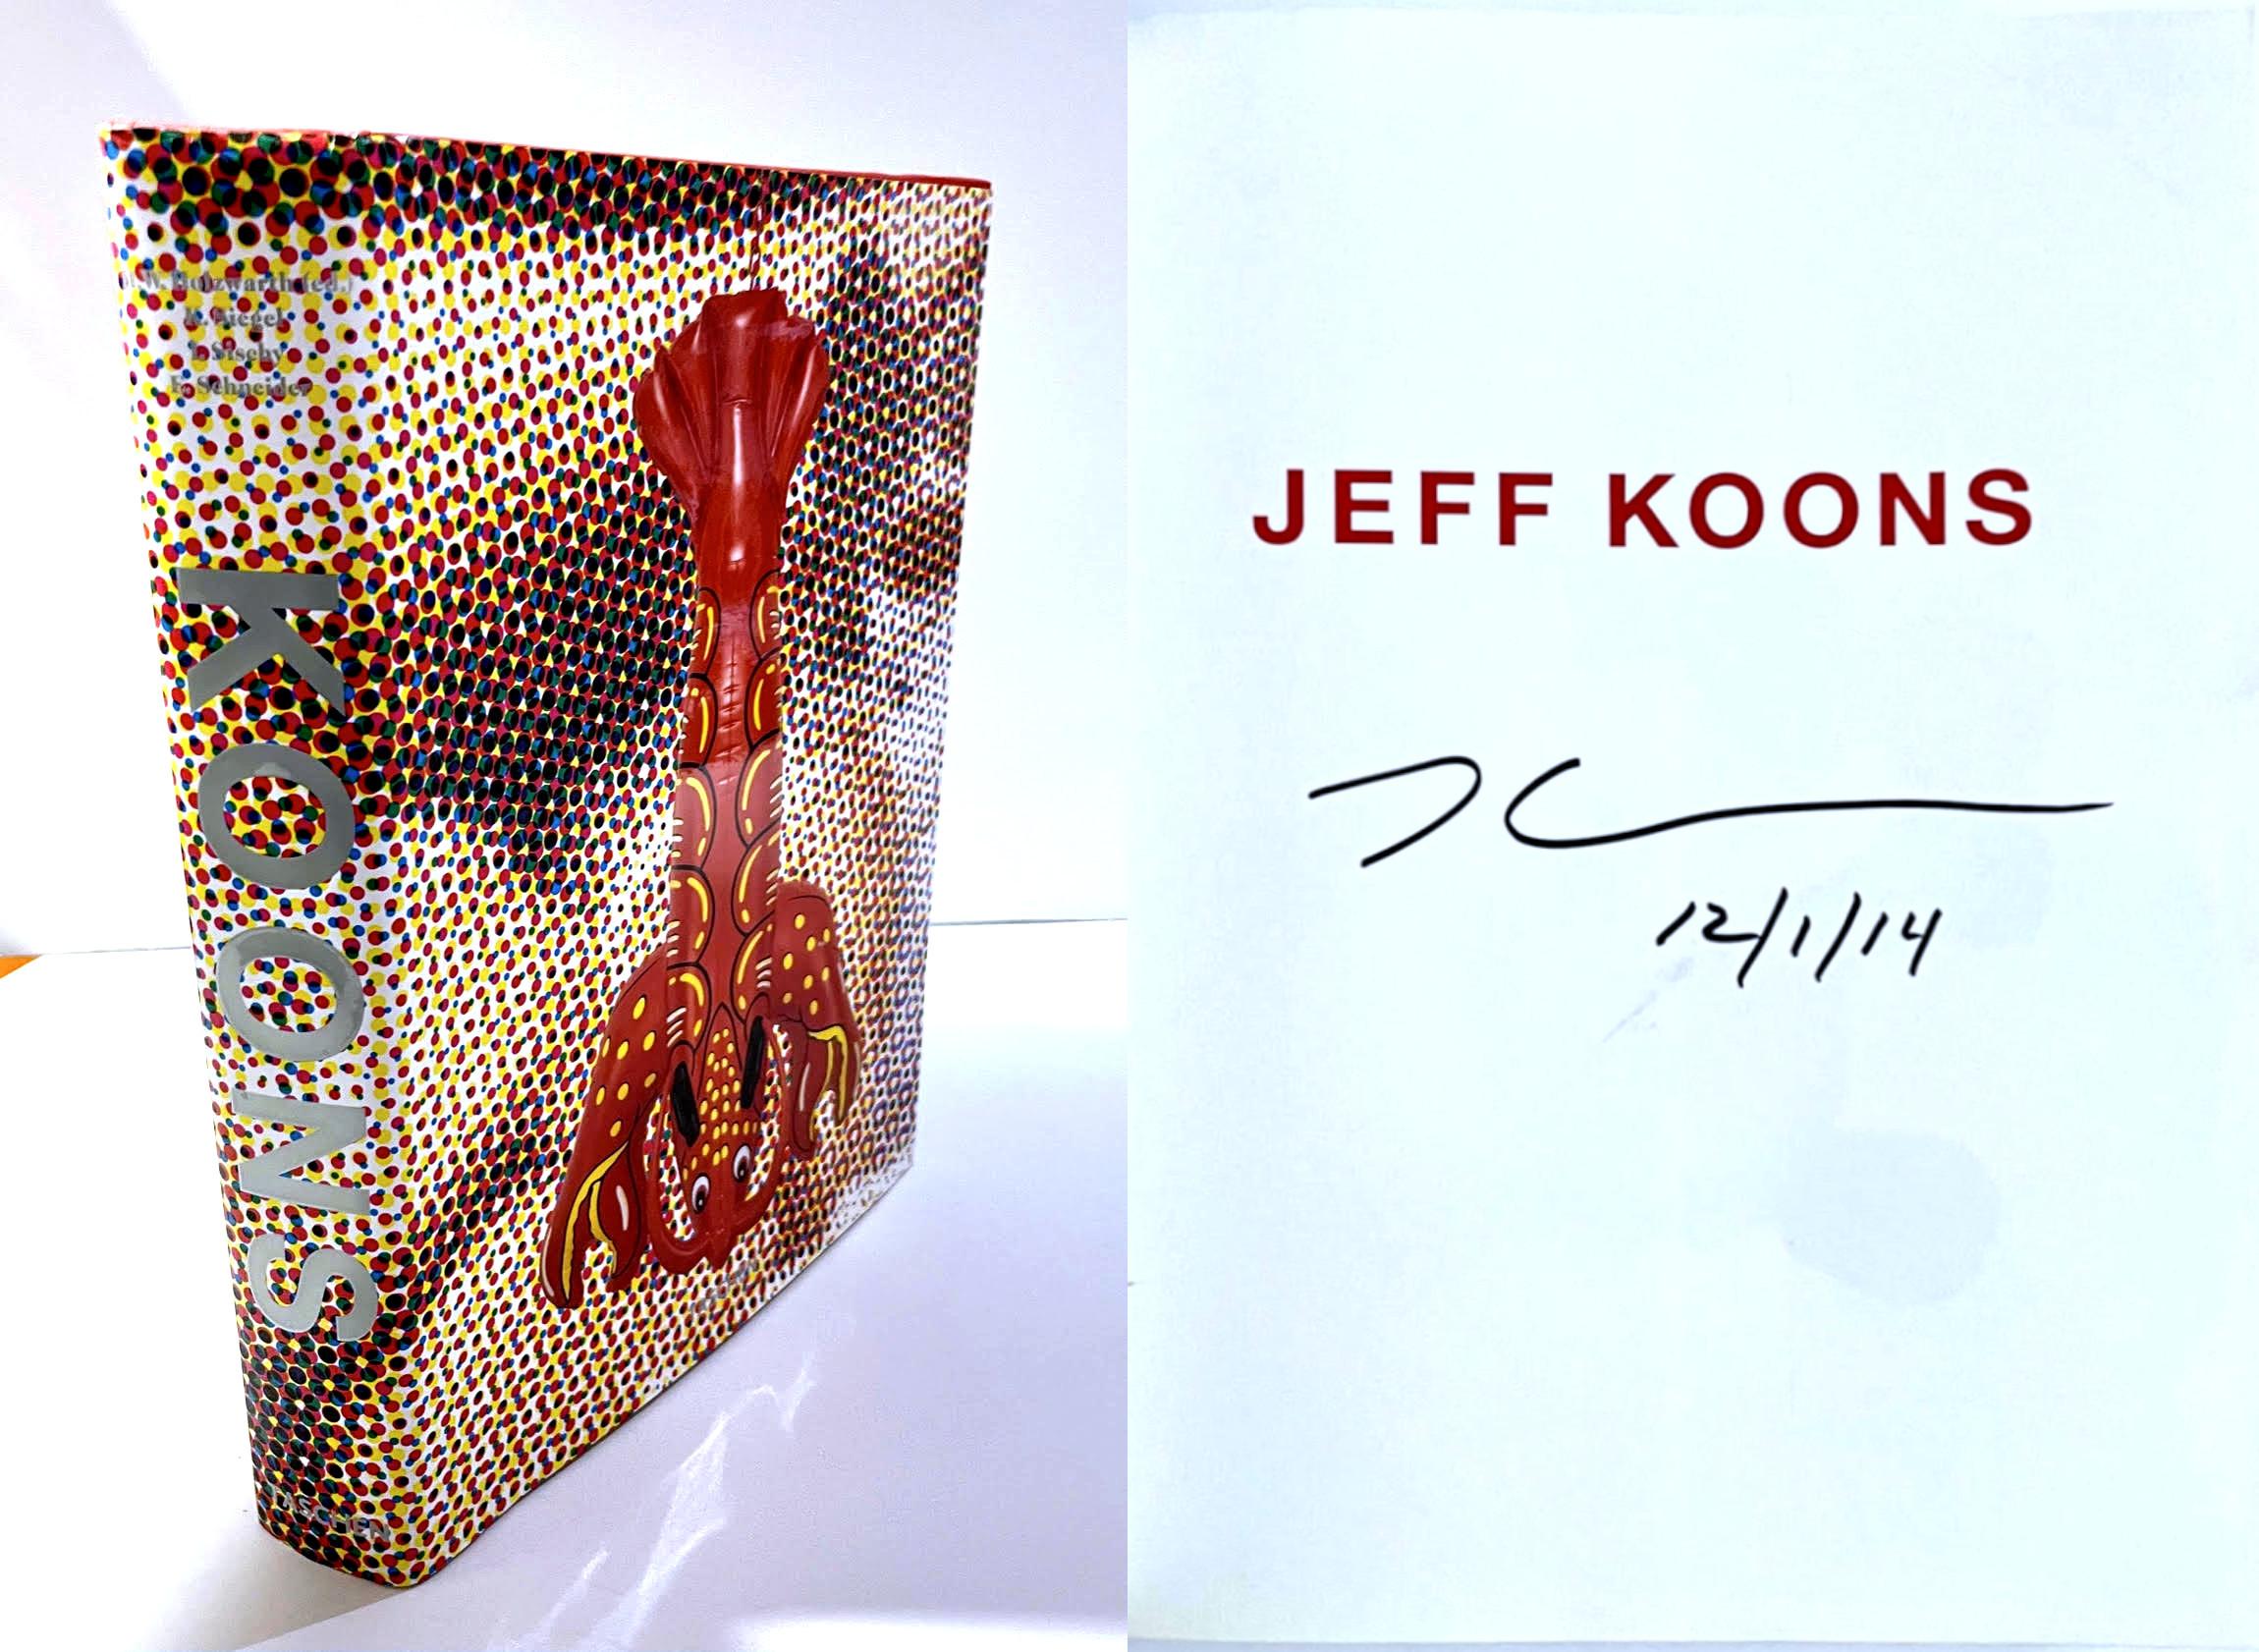 Jeff Koons
Aufwendig illustrierte 592-seitige Monografie (handsigniert von Jeff Koons), 2009
Gebundene Monografie mit Schutzumschlag (handsigniert von Jeff Koons)
Auf der halben Titelseite fett signiert und datiert 12/1/14
13 1/2 × 10 × 2 Zoll

Von